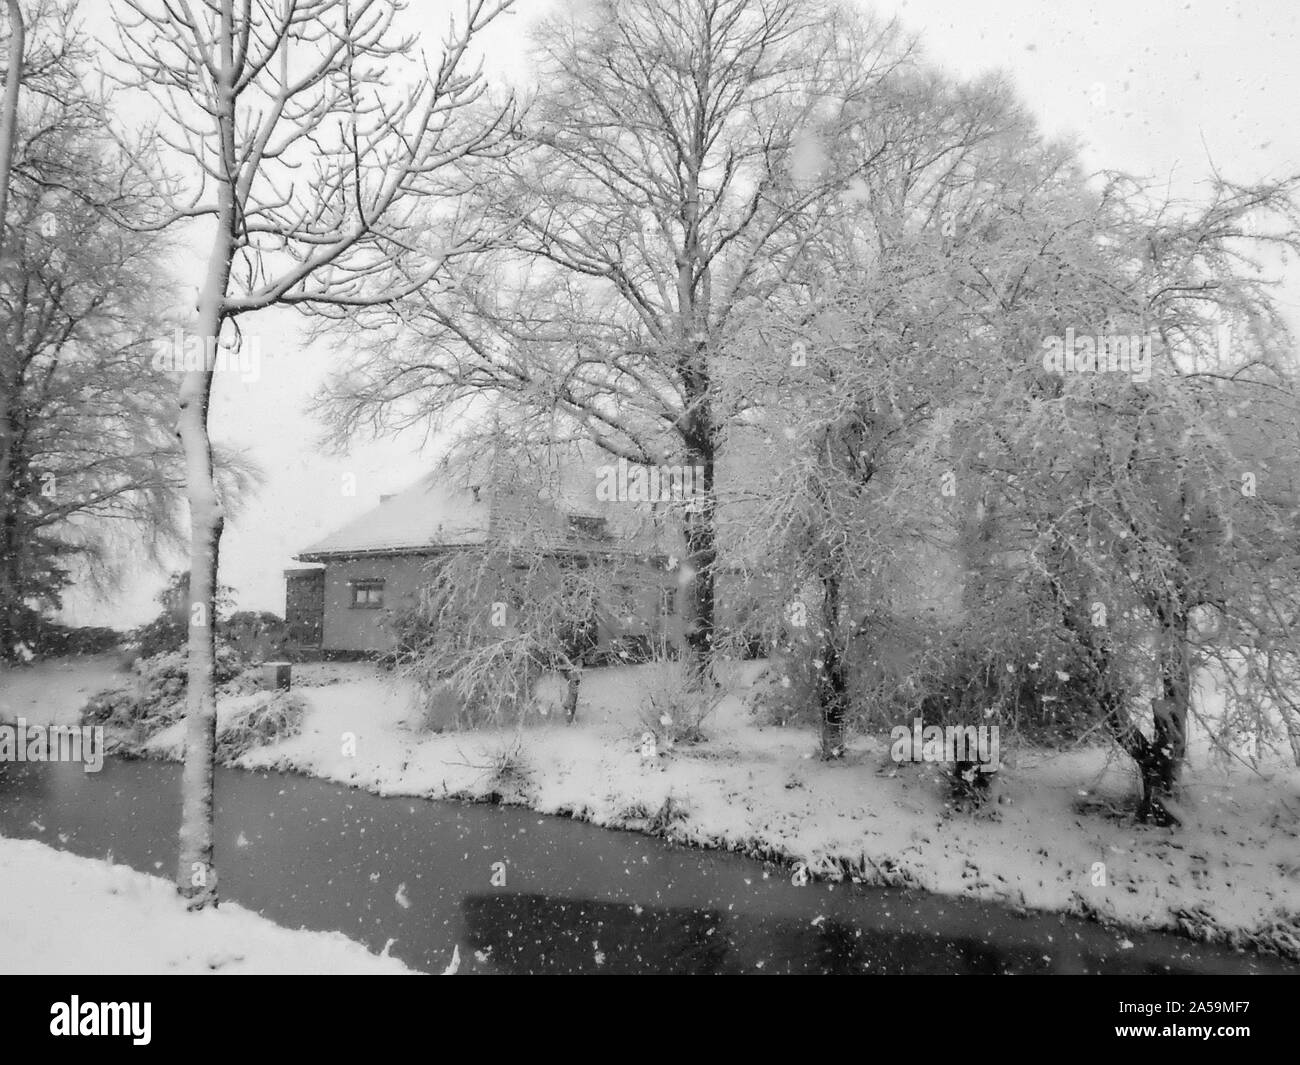 Schnee Landschaft in den Niederlanden. Ein altes Bauernhaus und die umliegenden Bäume sind mit einer dicken Schicht Schnee bedeckt. Stockfoto